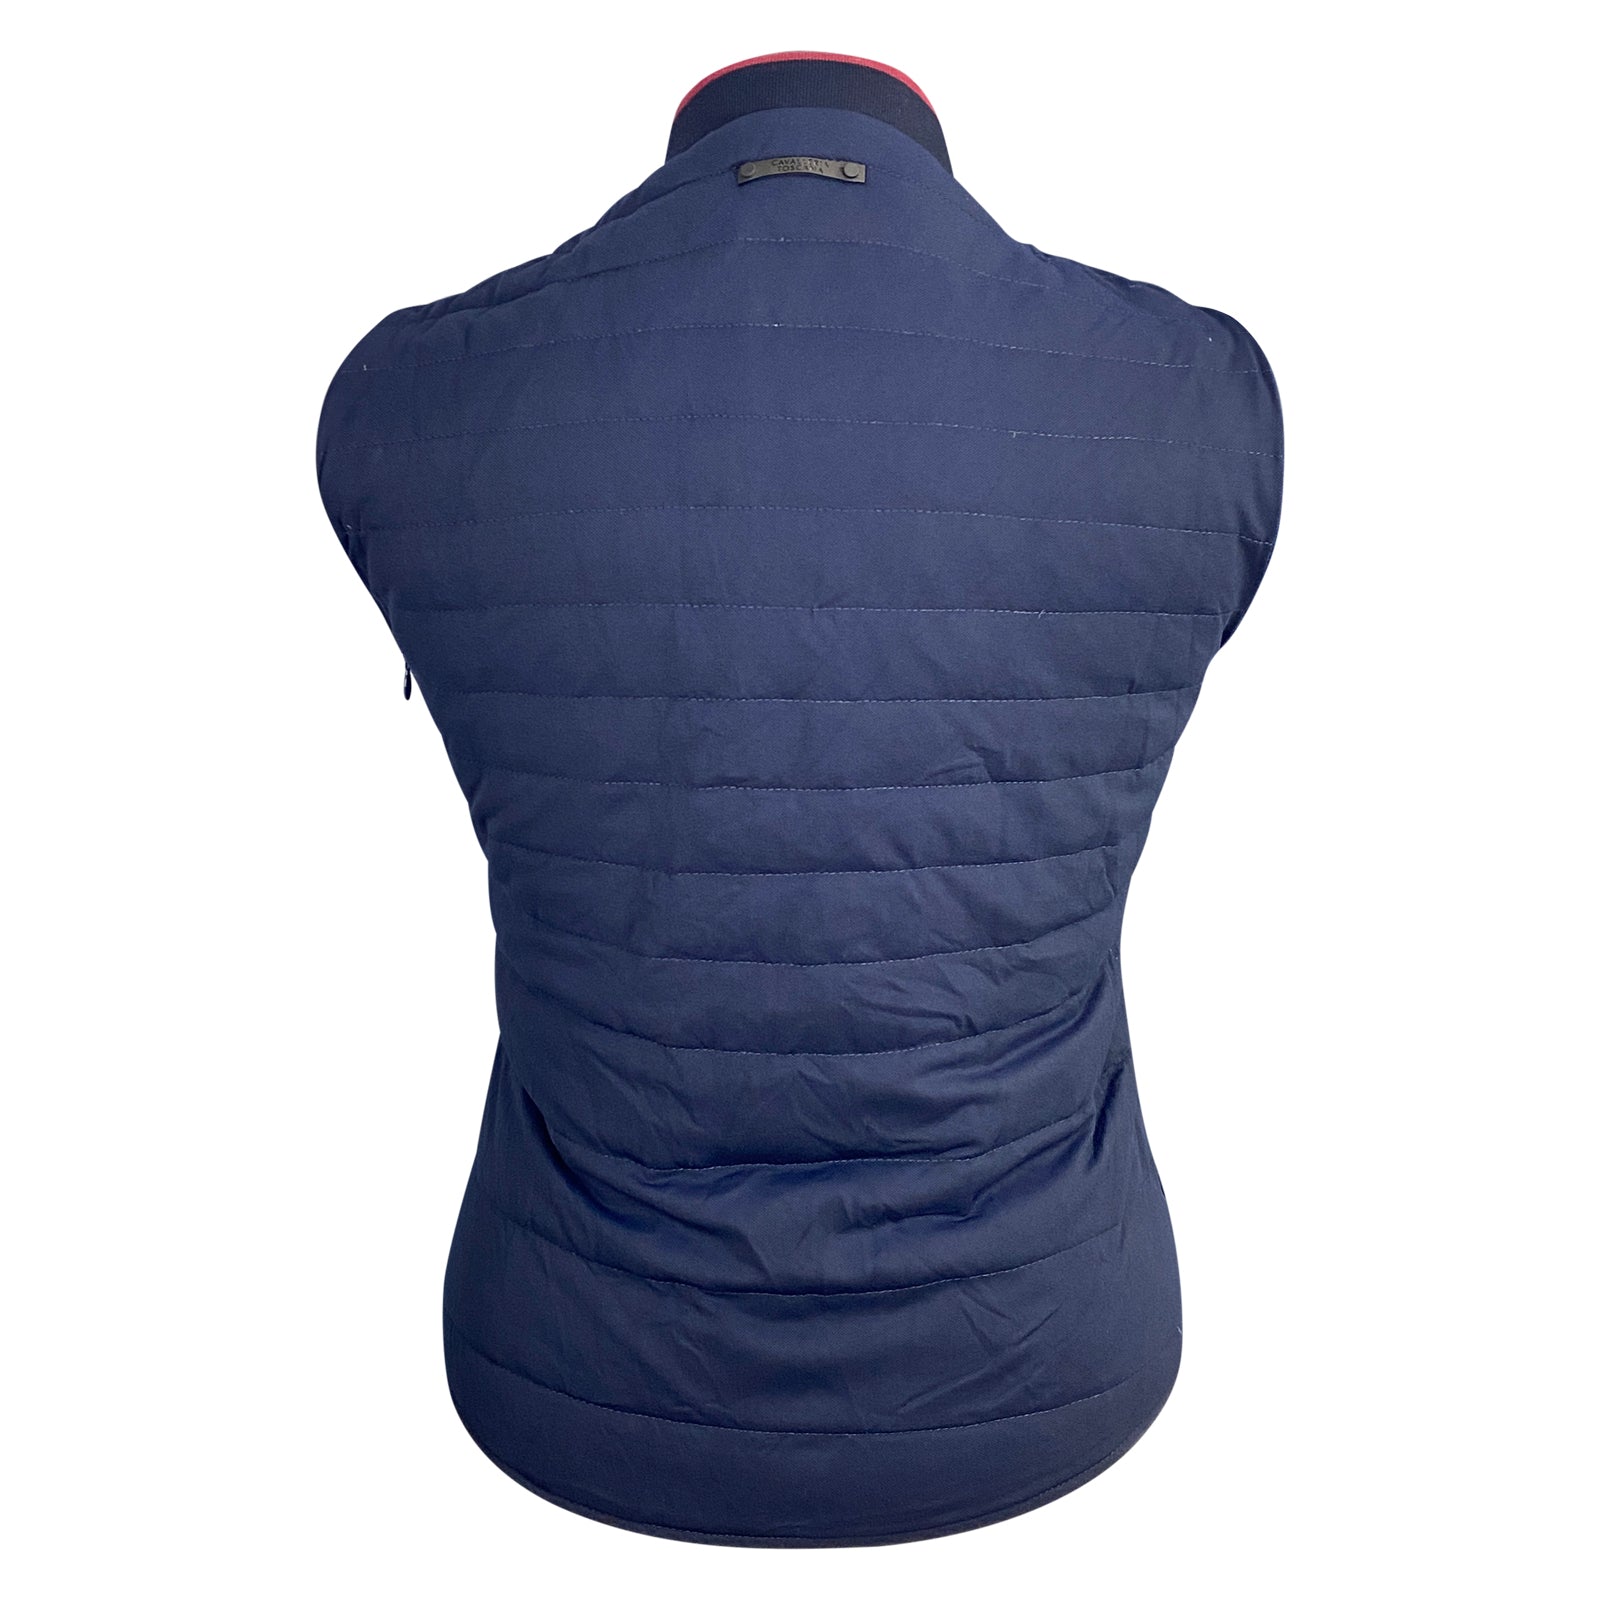 Back of vest of Cavalleria Toscana Piquet Detachable Sleeve Jacket in Navy